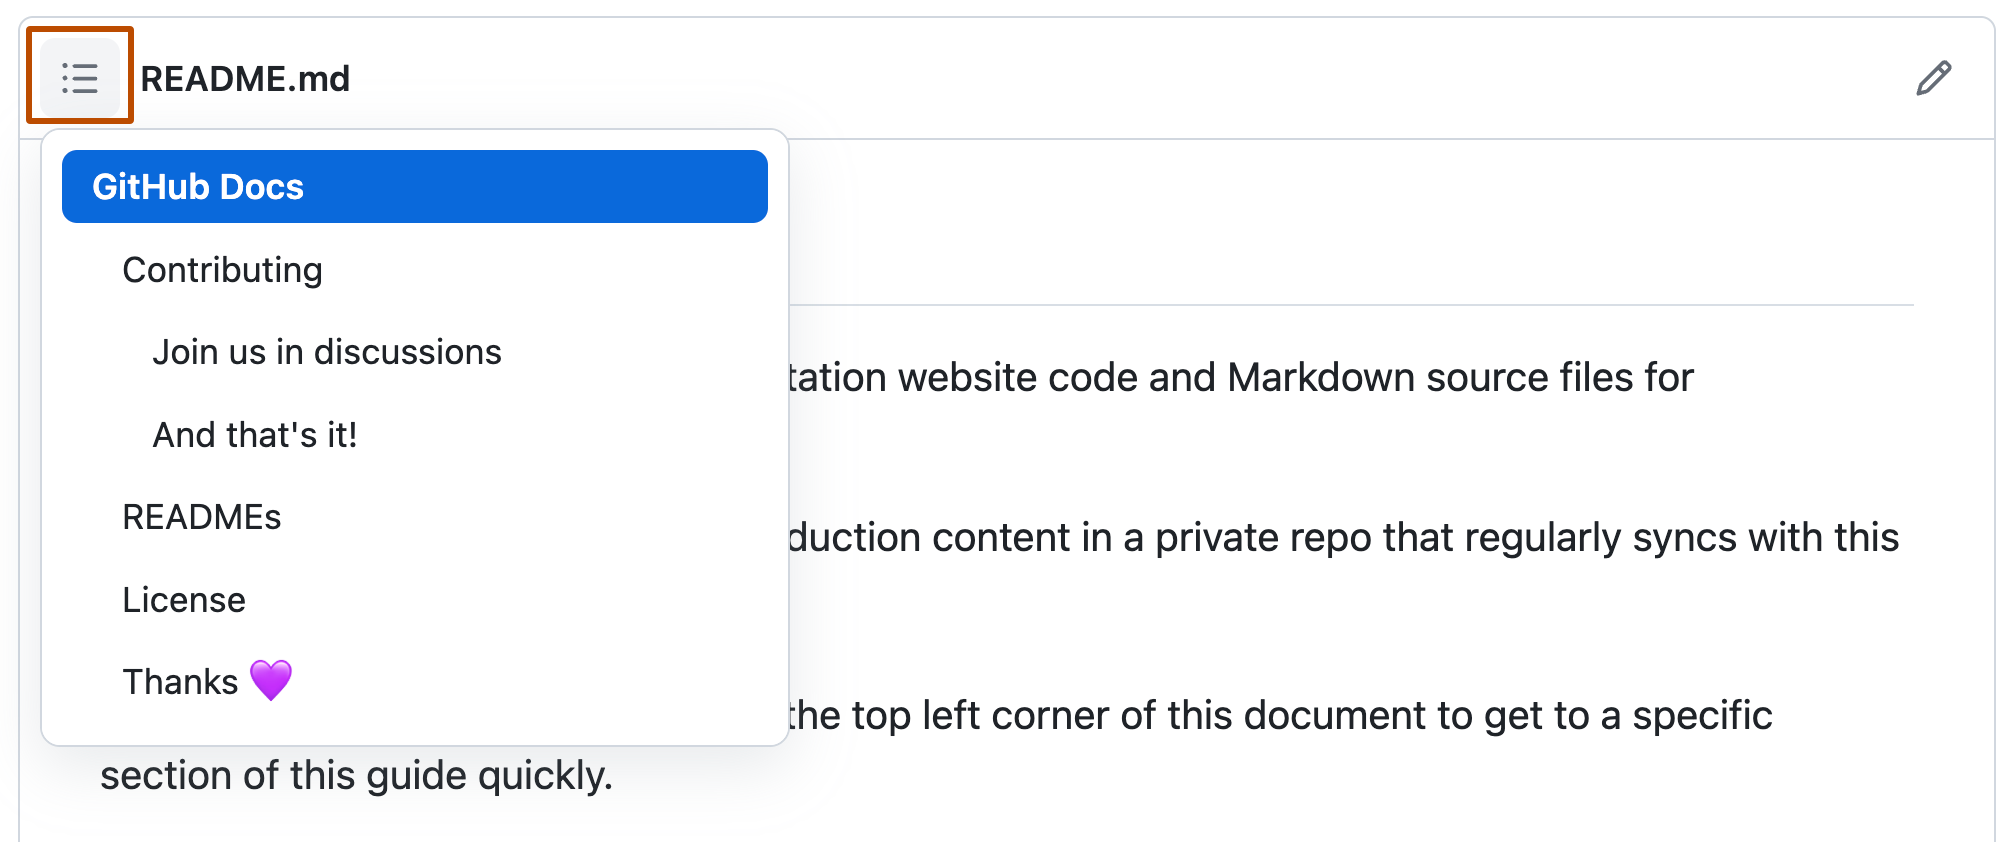 Captura de tela do arquivo LEIAME no repositório de código aberto do GitHub Docs com o menu suspenso do sumário exposto. O ícone do sumário tem o contorno em laranja escuro.